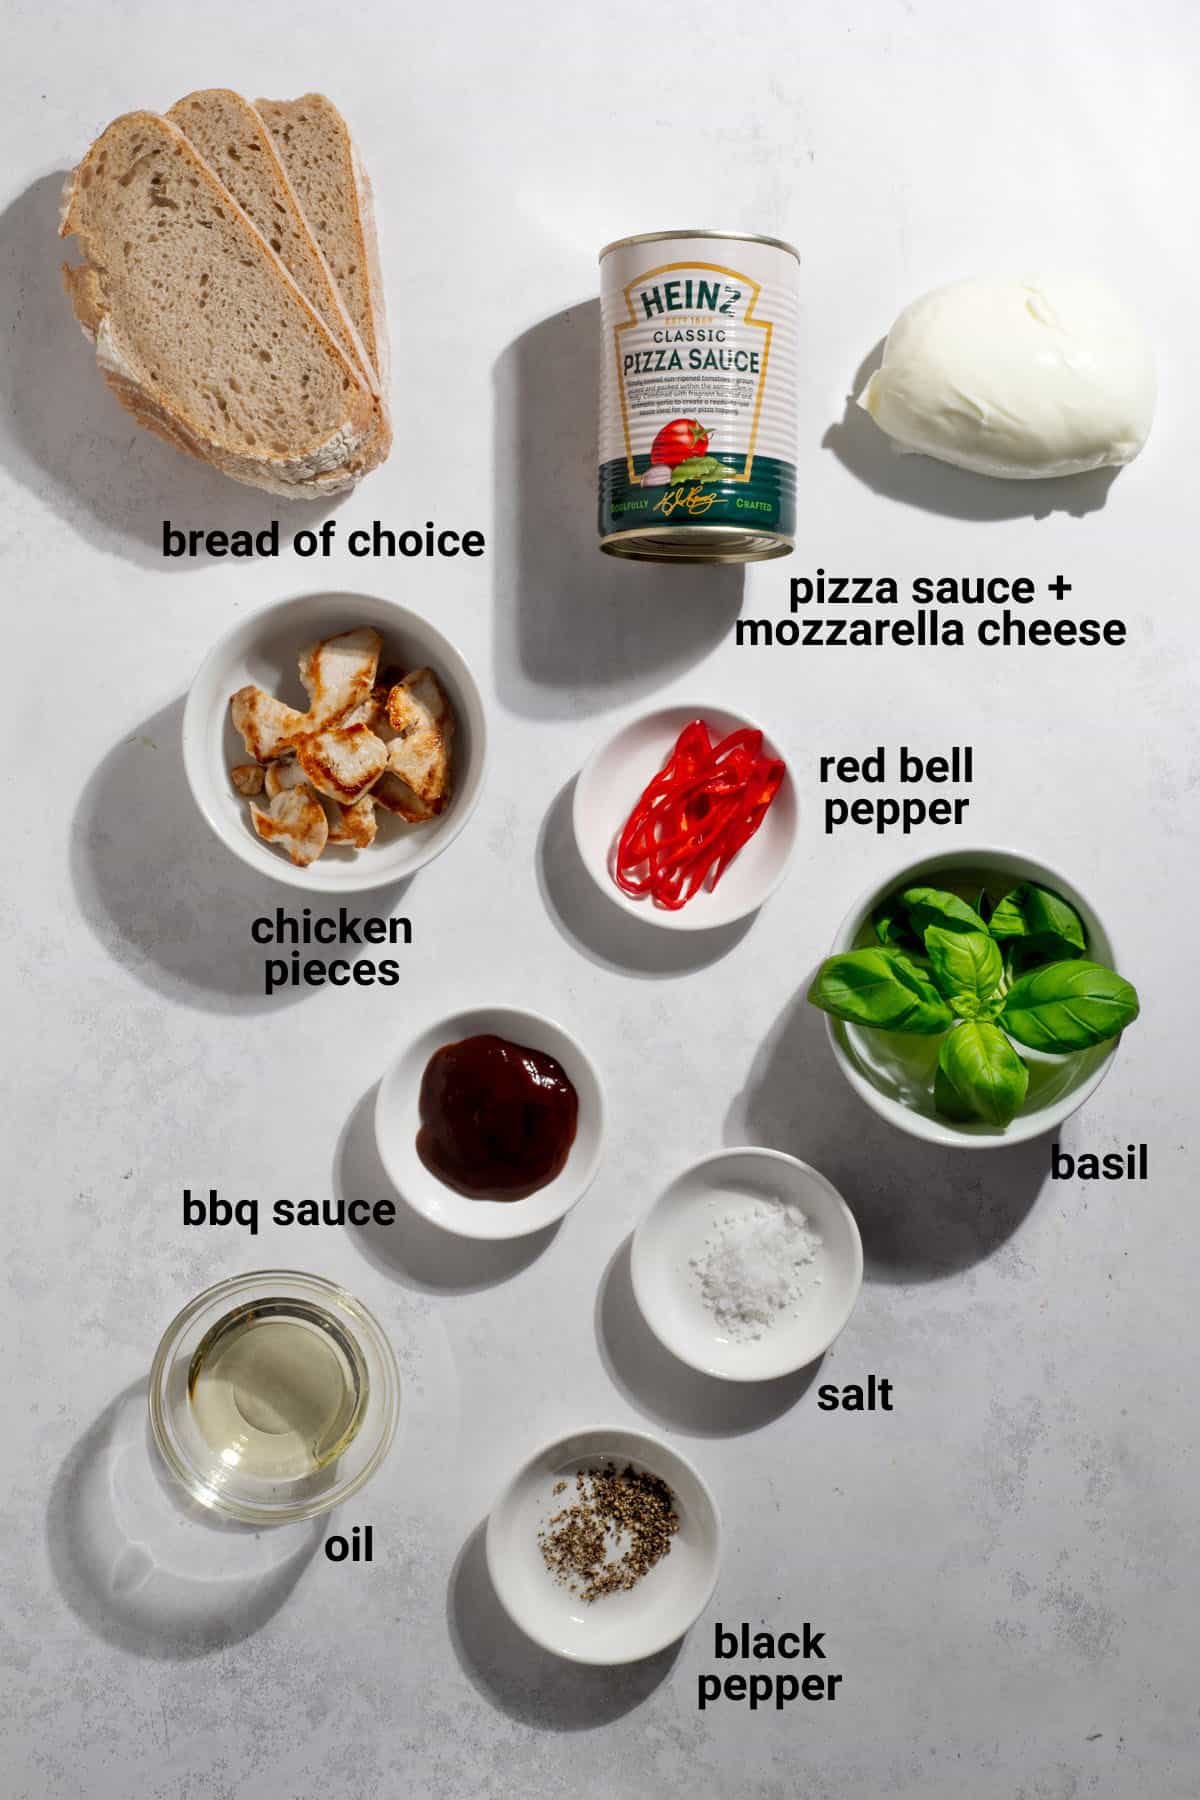 BBQ chicken pizza toast ingredients.